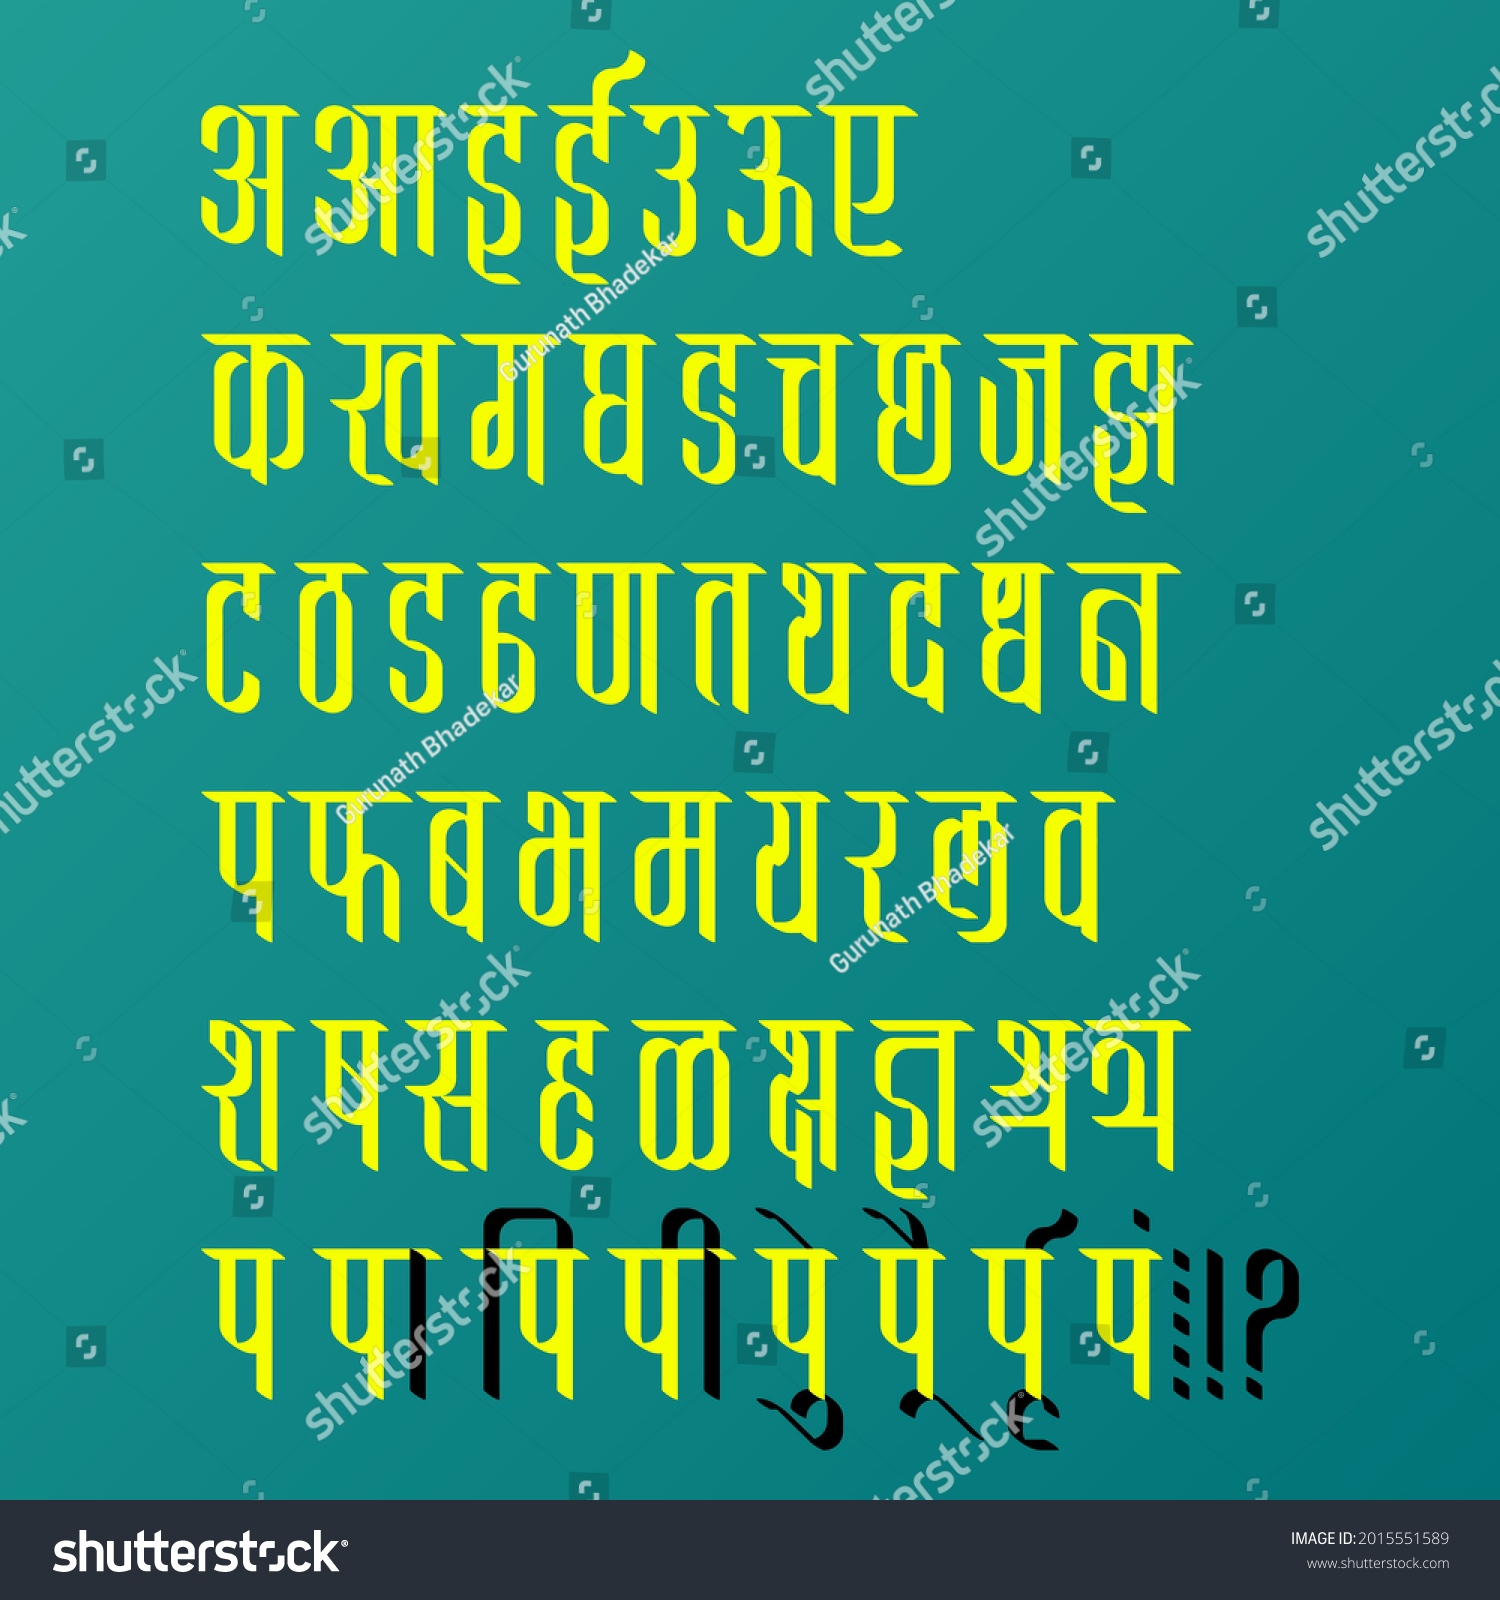 SVG of Handmade Devanagari font for Indian languages Hindi, Sanskrit and Marathi. svg